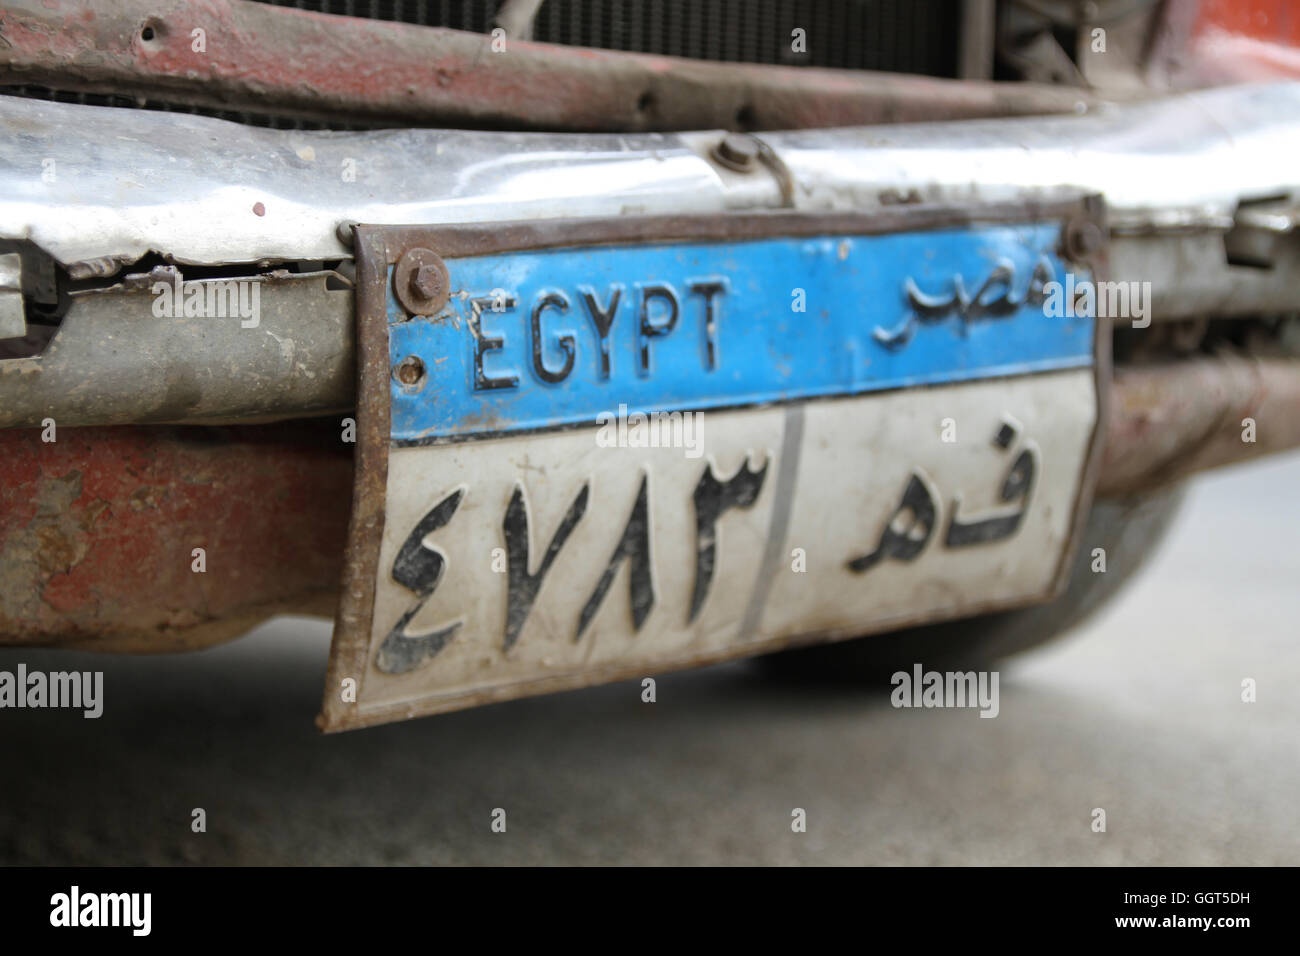 Agyptische Kfz Kennzeichen Fur Ein Taxi In Kairo Agypten Stockfotografie Alamy